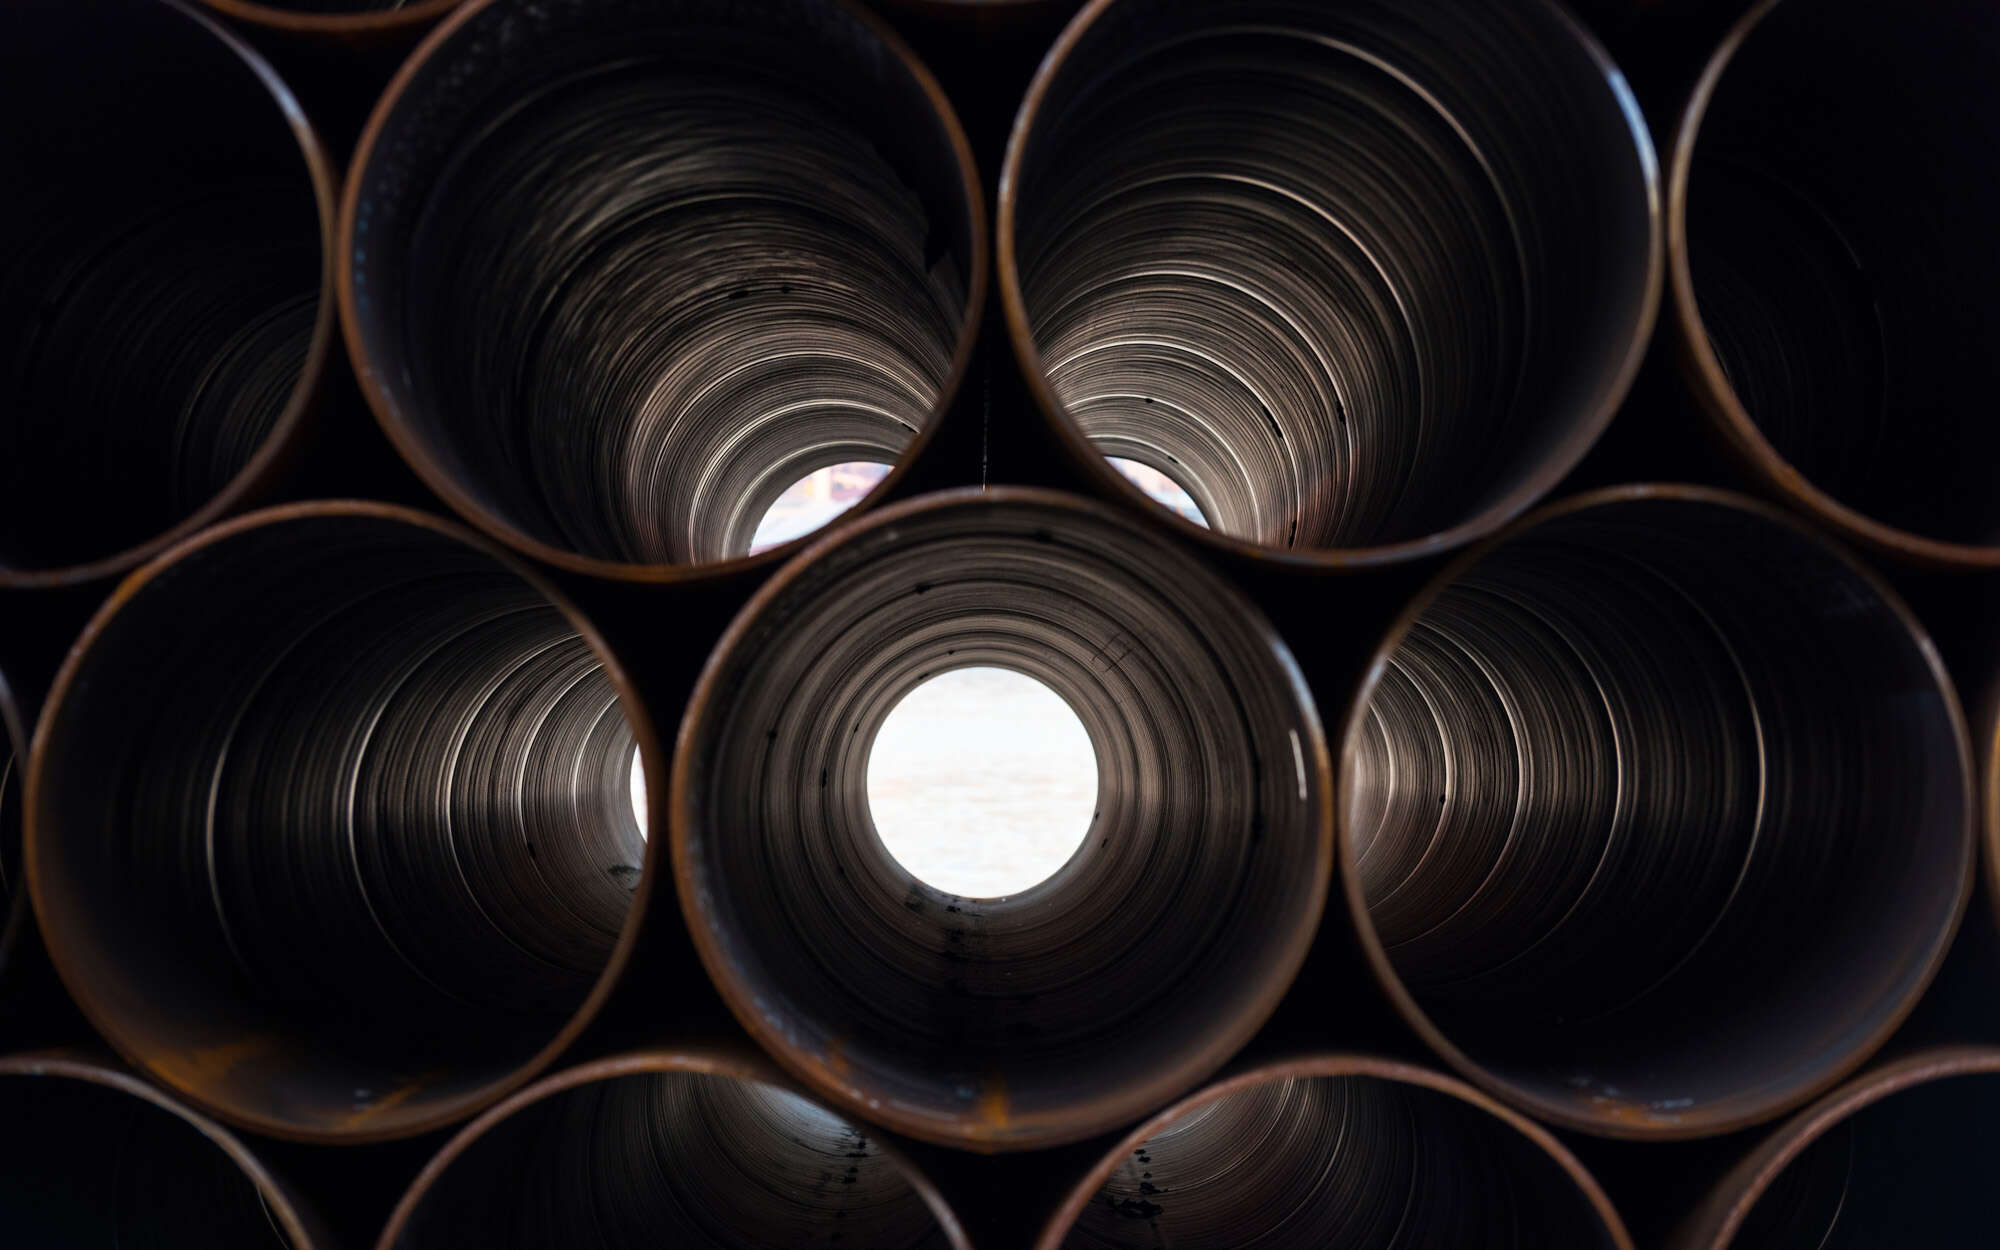 Big Steel Pipes, New Metal tubes